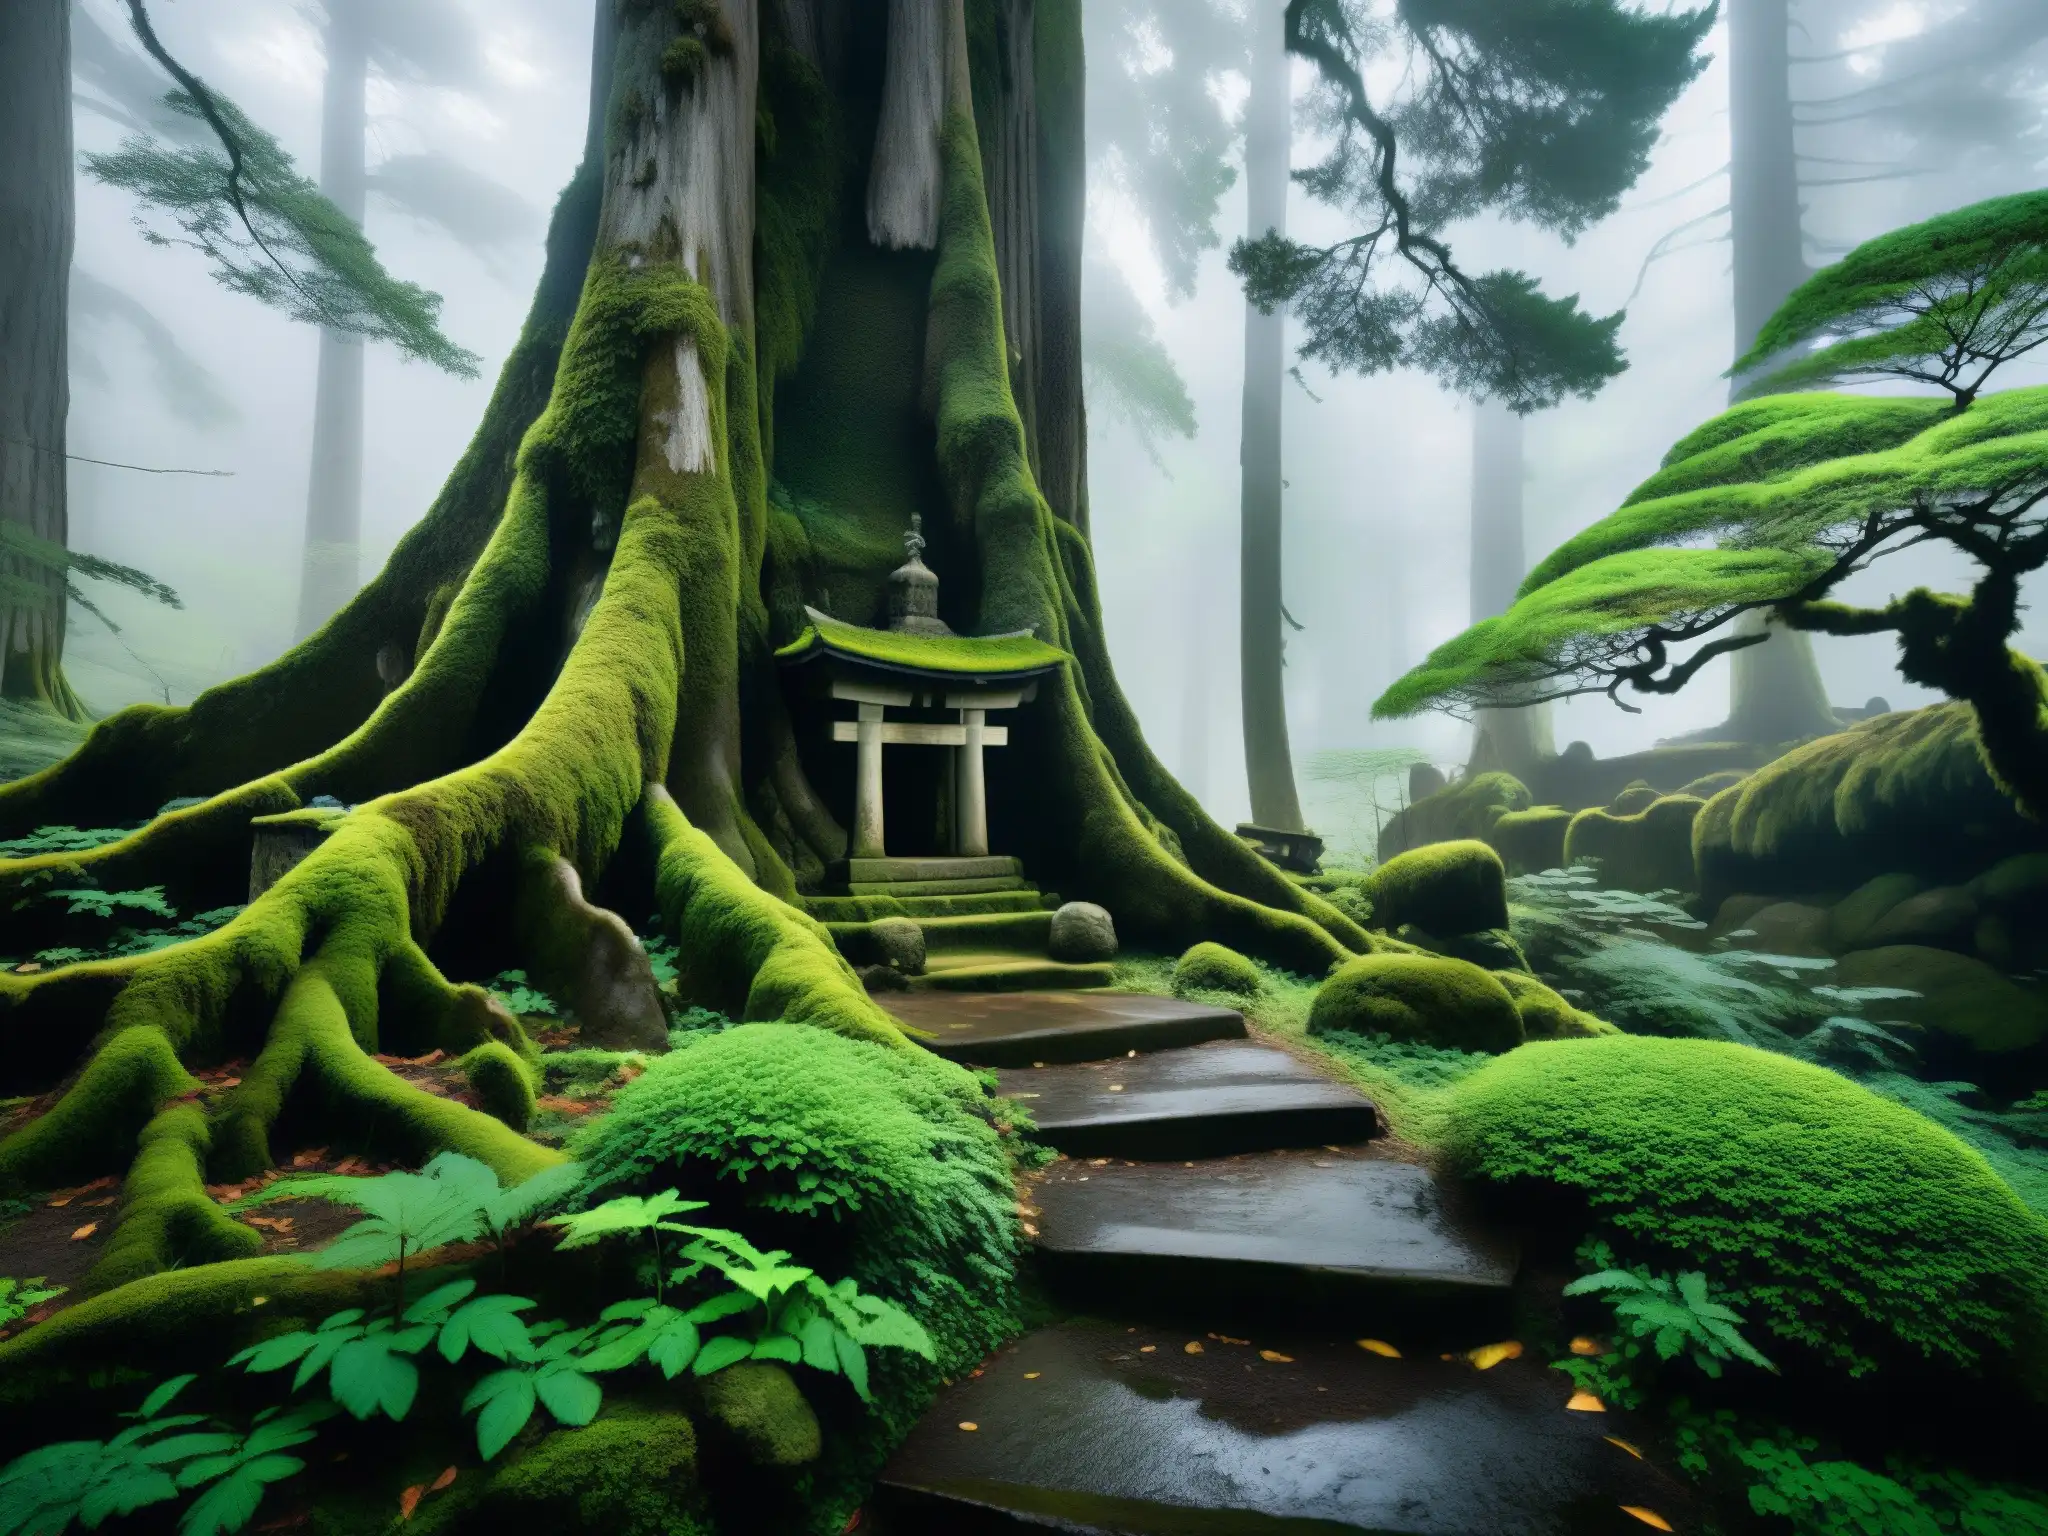 Un bosque místico en las montañas de Japón con árboles antiguos y un santuario cubierto de musgo entre las raíces